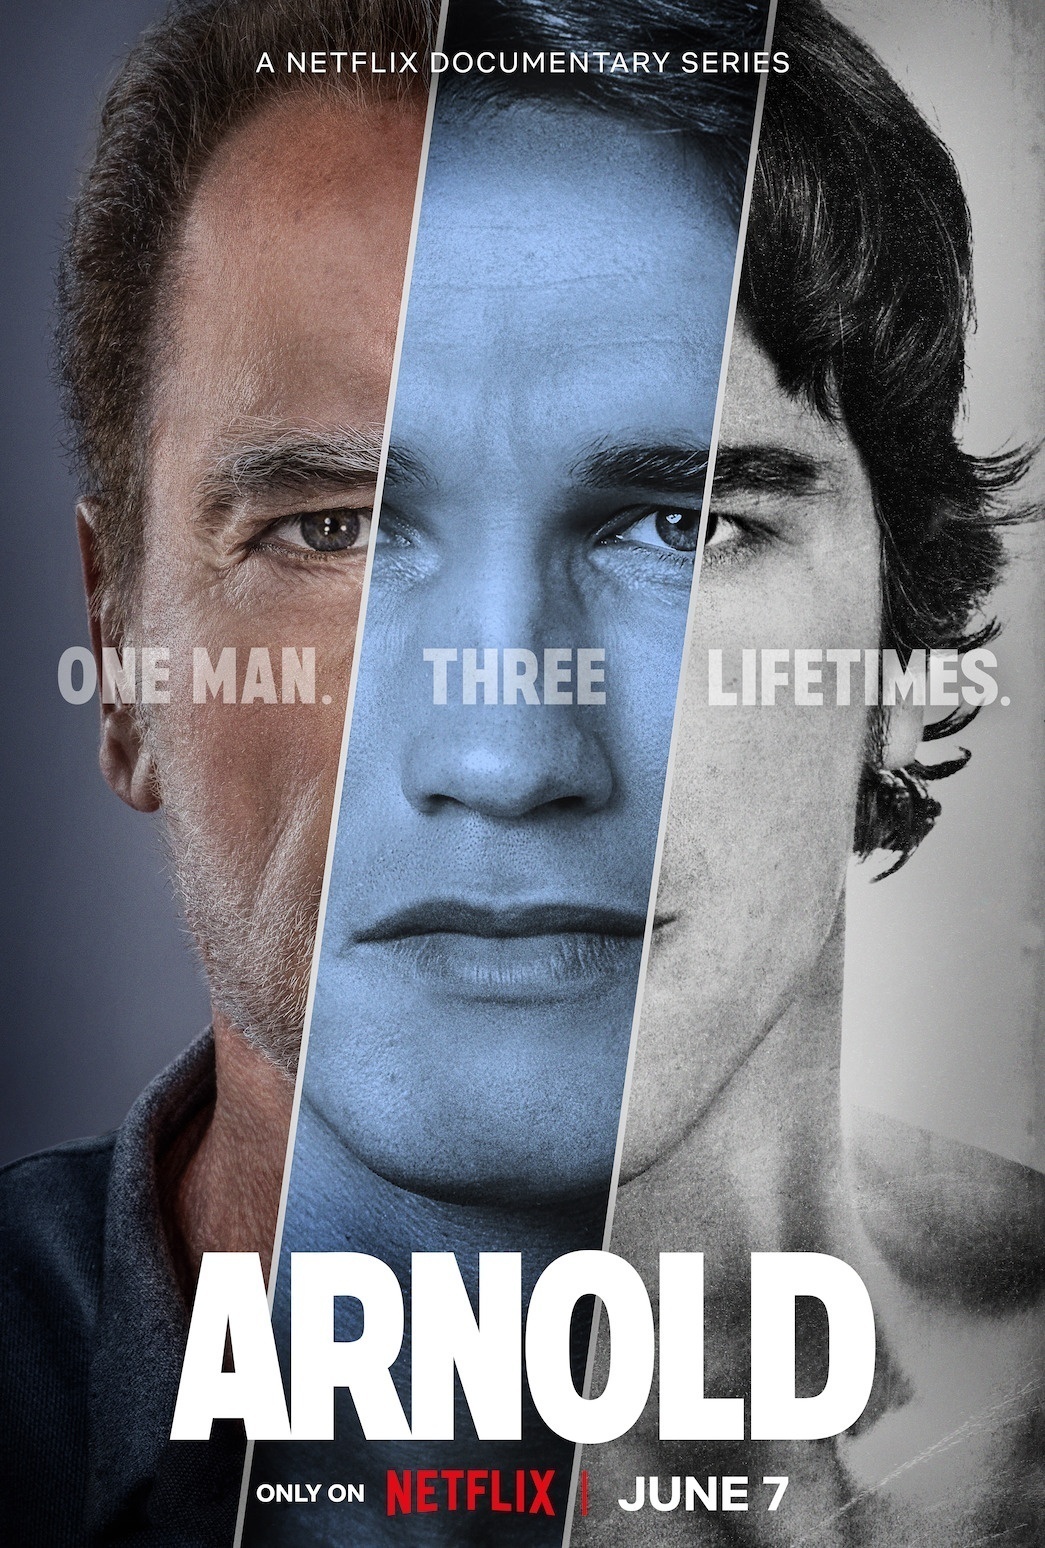 affiche documentaire arnold netflix - Arnold : après Fubar, Netflix consacrera une mini-série documentaire à Schwarzenegger en juin (Date de sortie + Bande annonce)